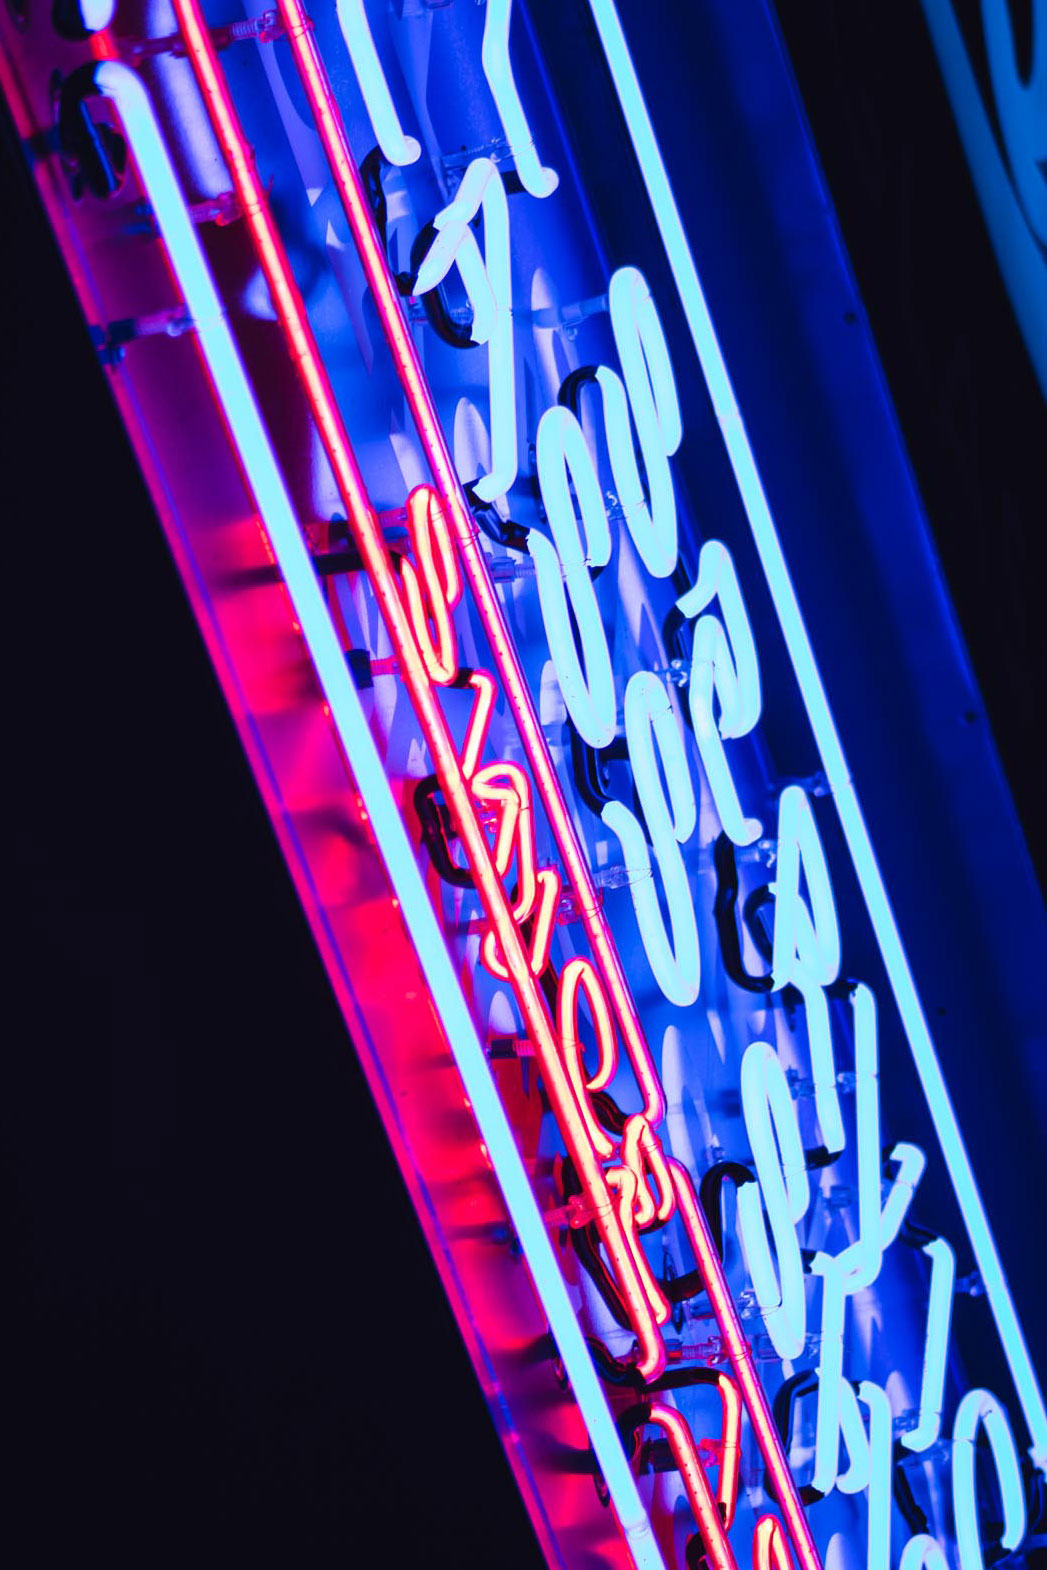 louis-auto-glass-neon-sign-illuminated-night-closeup